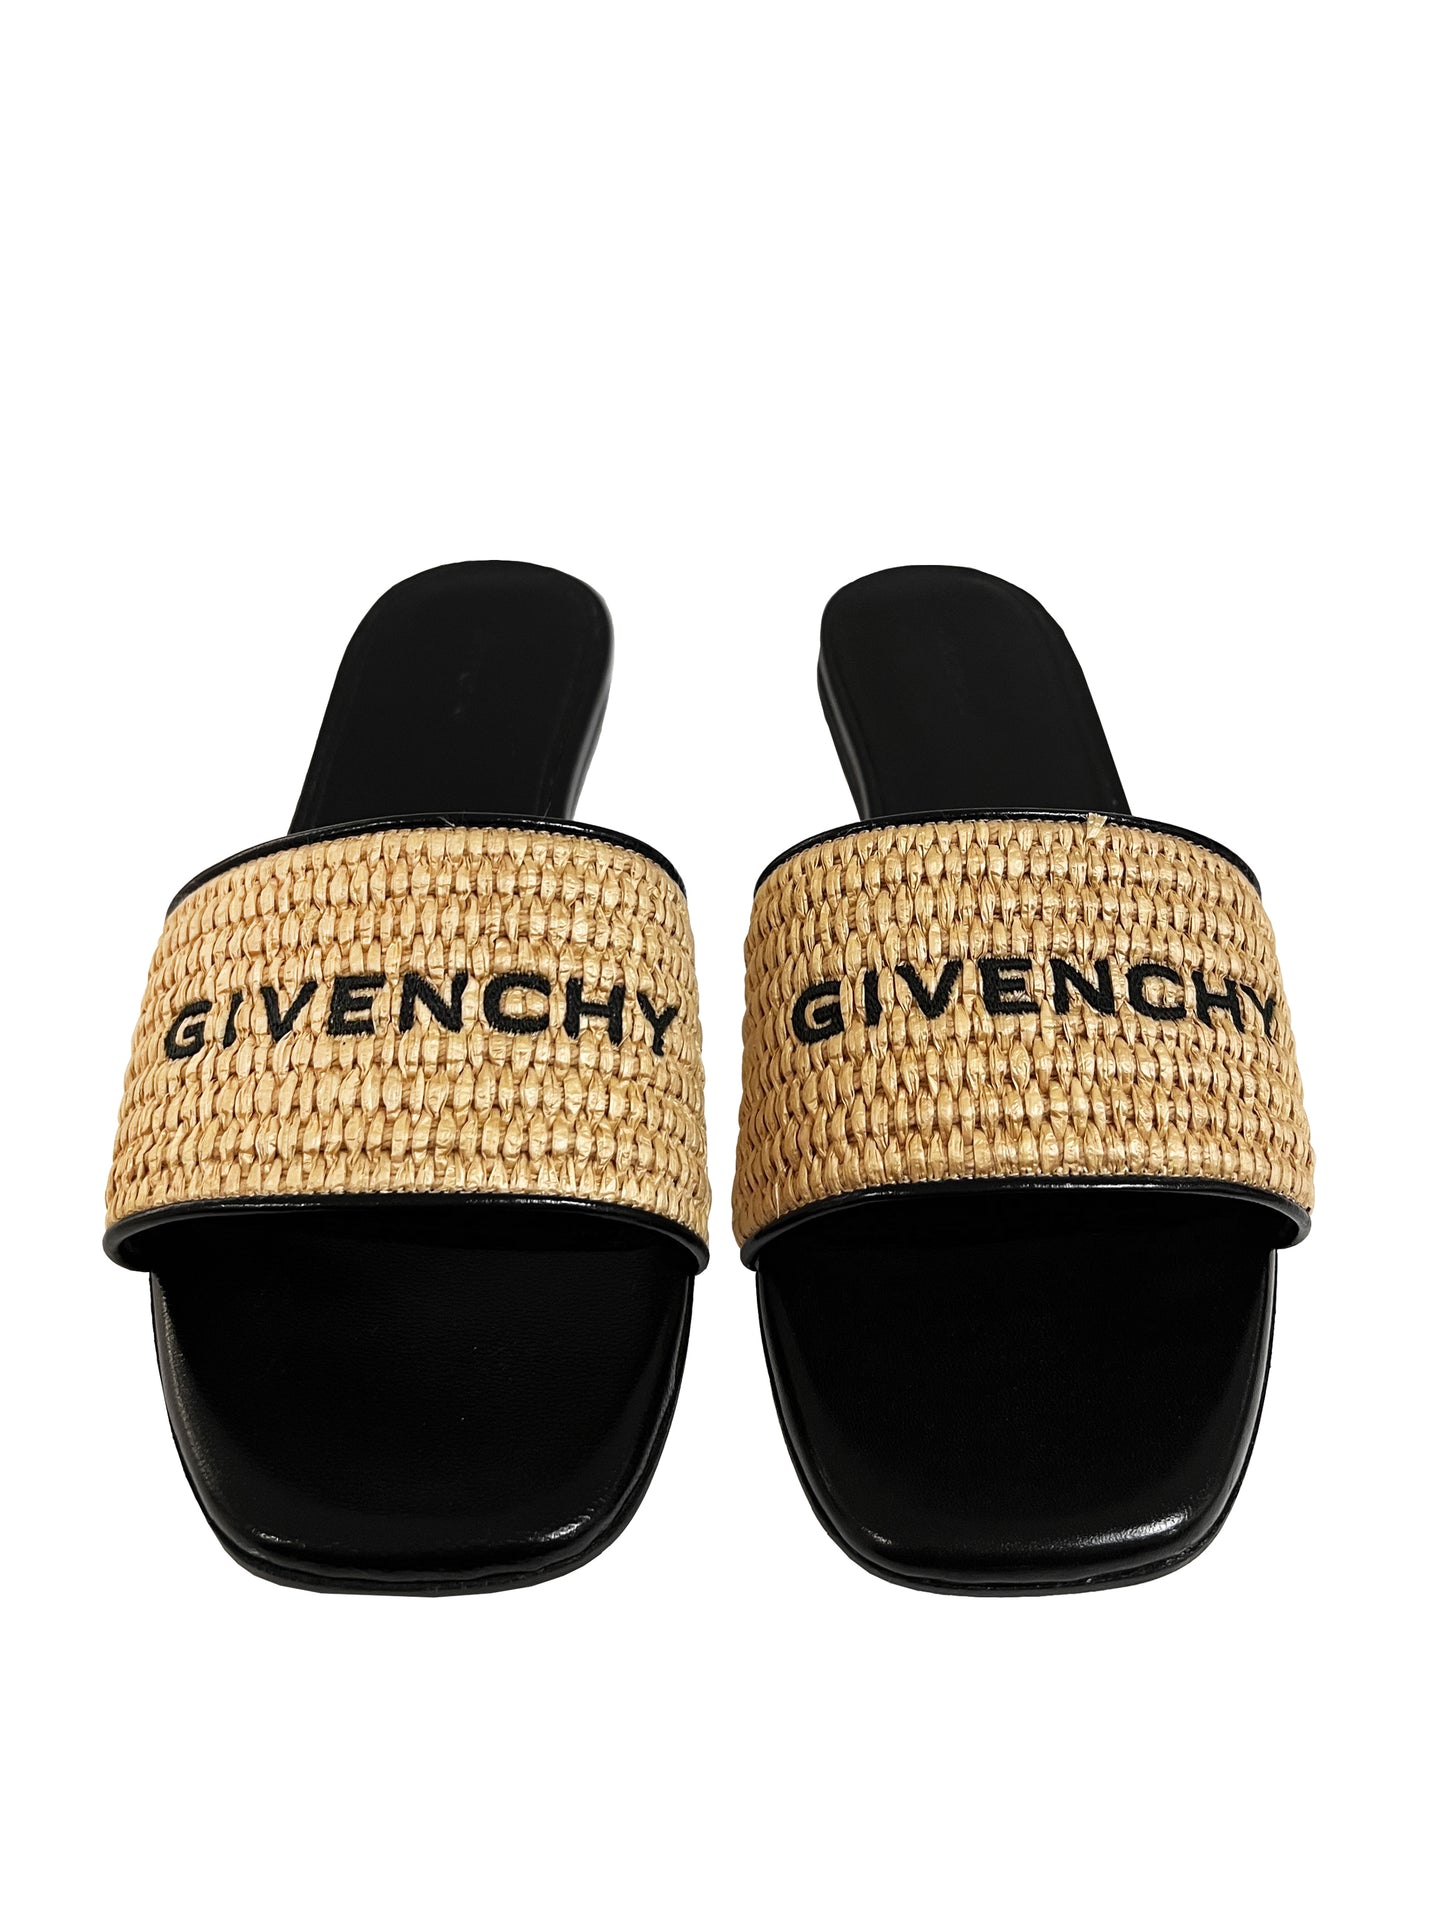 Givenchy 4G Flache Sandalen Schwarz/Beige